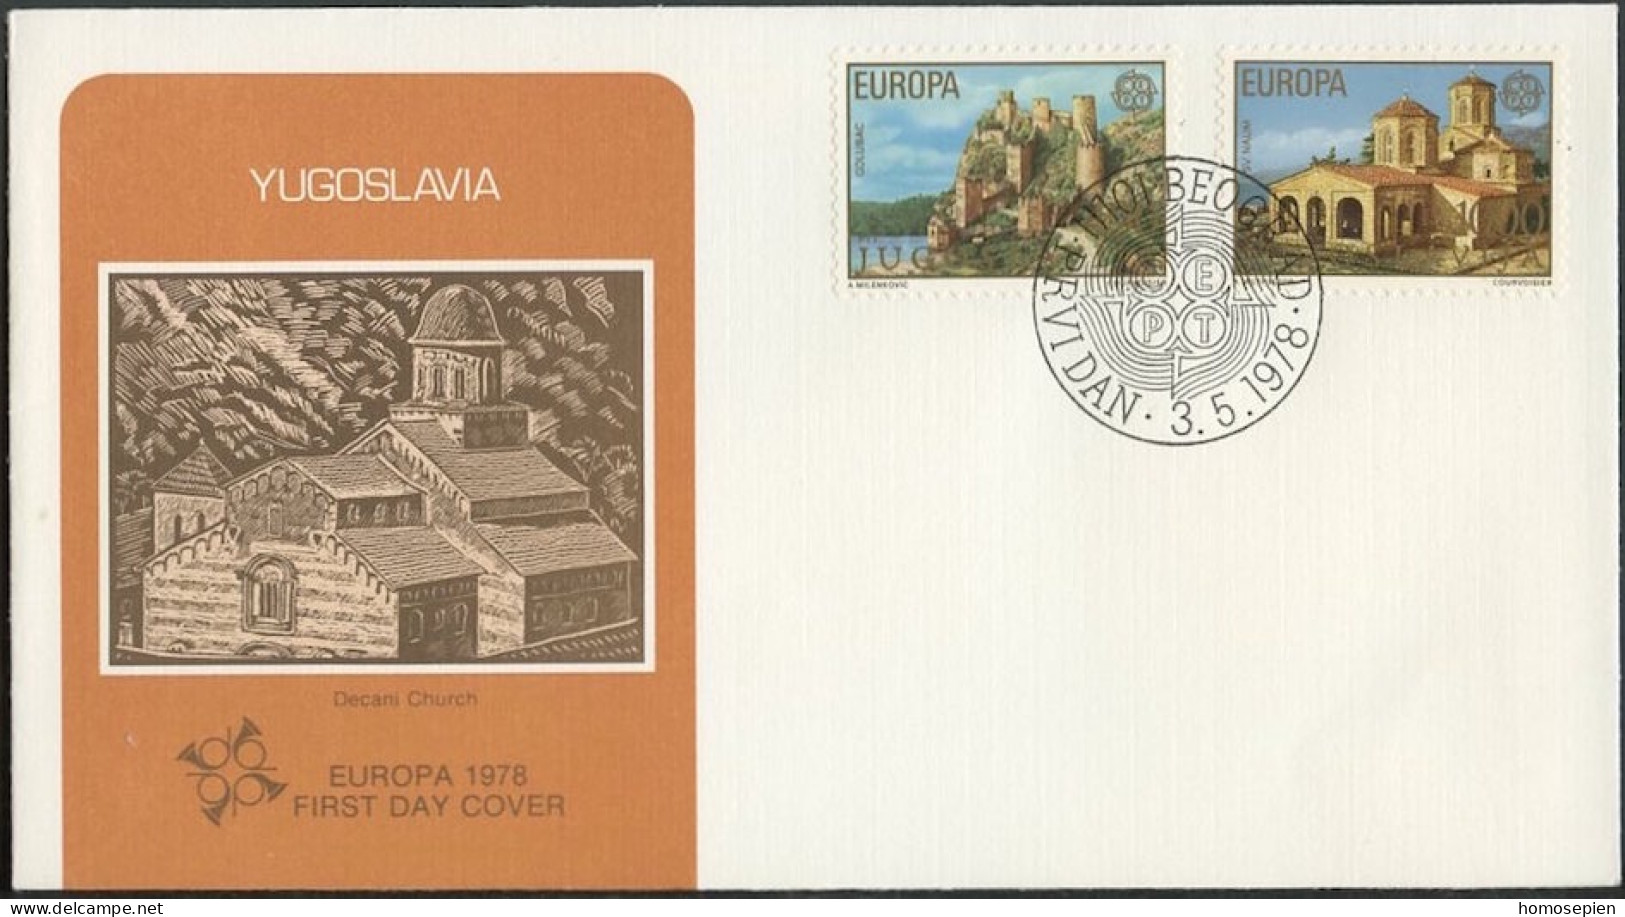 Yougoslavie - Jugoslawien - Yugoslavia FDC3 1978 Y&T N°1607 à 1608 - Michel N°1725 à 1726 - EUROPA - FDC